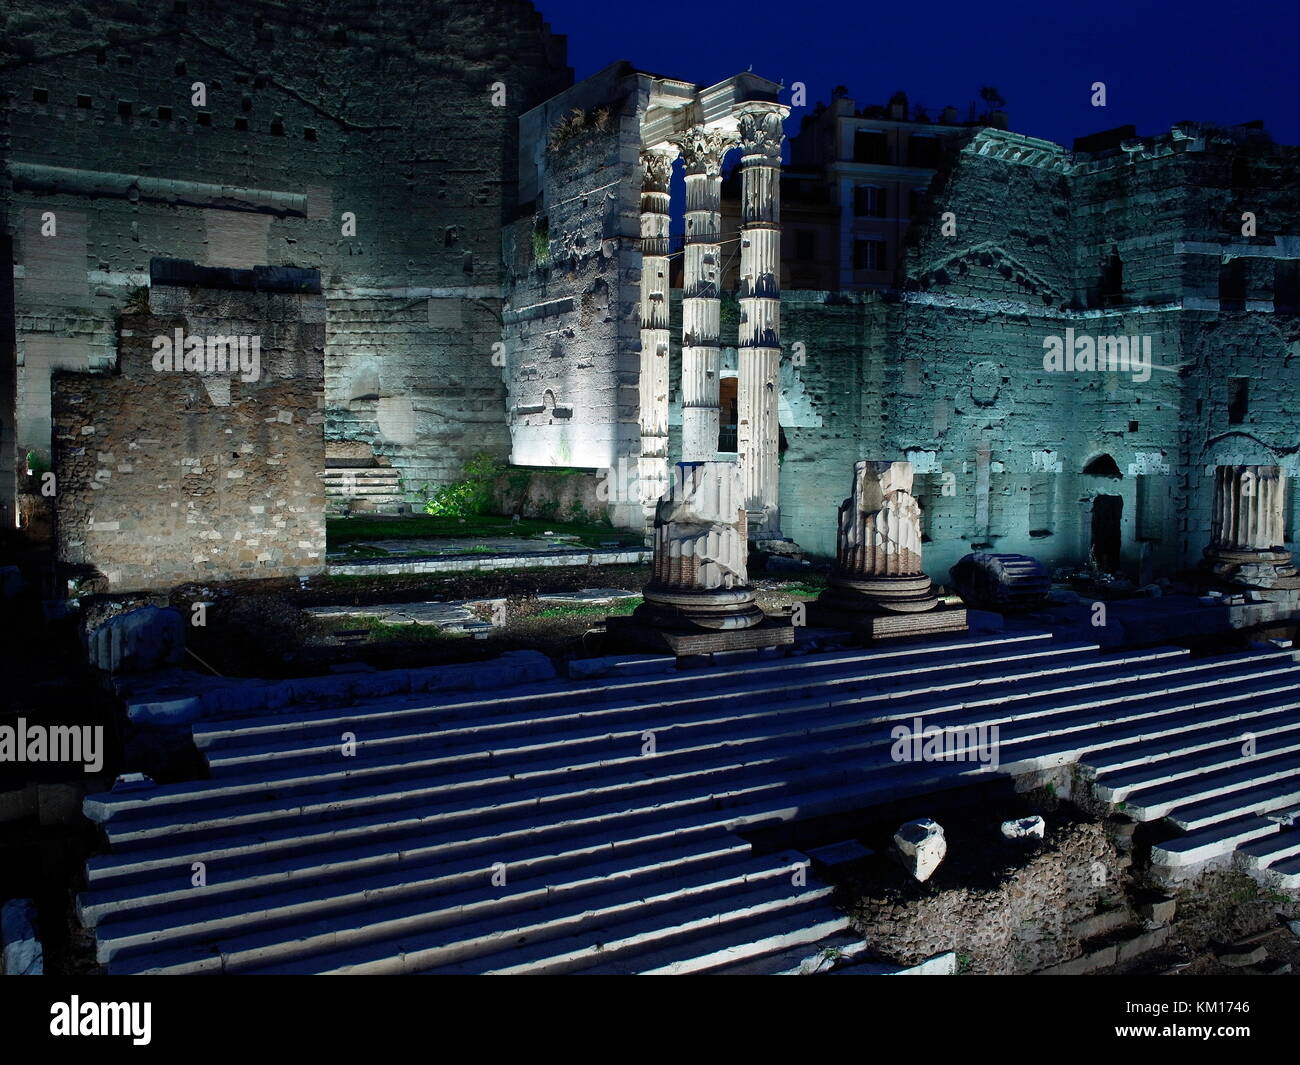 AJAXNETPHOTO. 2015. Rom, Italien. - Römische Ruinen - Forum des Augustus, gedenkt der Schlacht bei Philippi, IN DER NÄHE DER PIAZZO DEL FORO TRAIANO. Foto: Jonathan Eastland/AJAX REF: GXR 151012 5855 Stockfoto